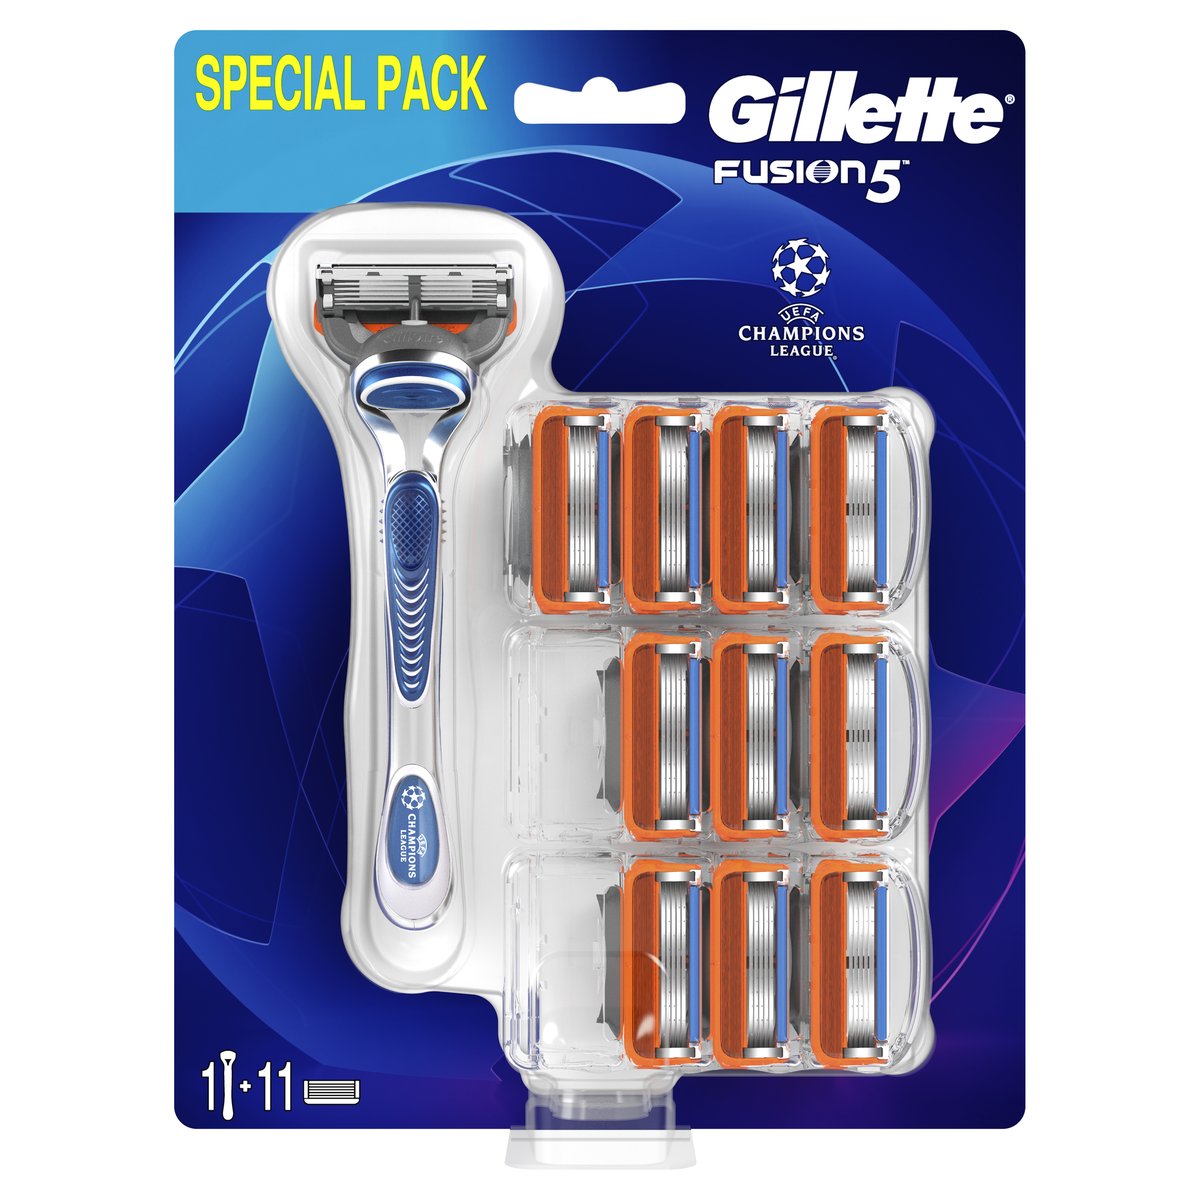 Gillette Fusion5 Holicí strojek + 11 holicích hlavic